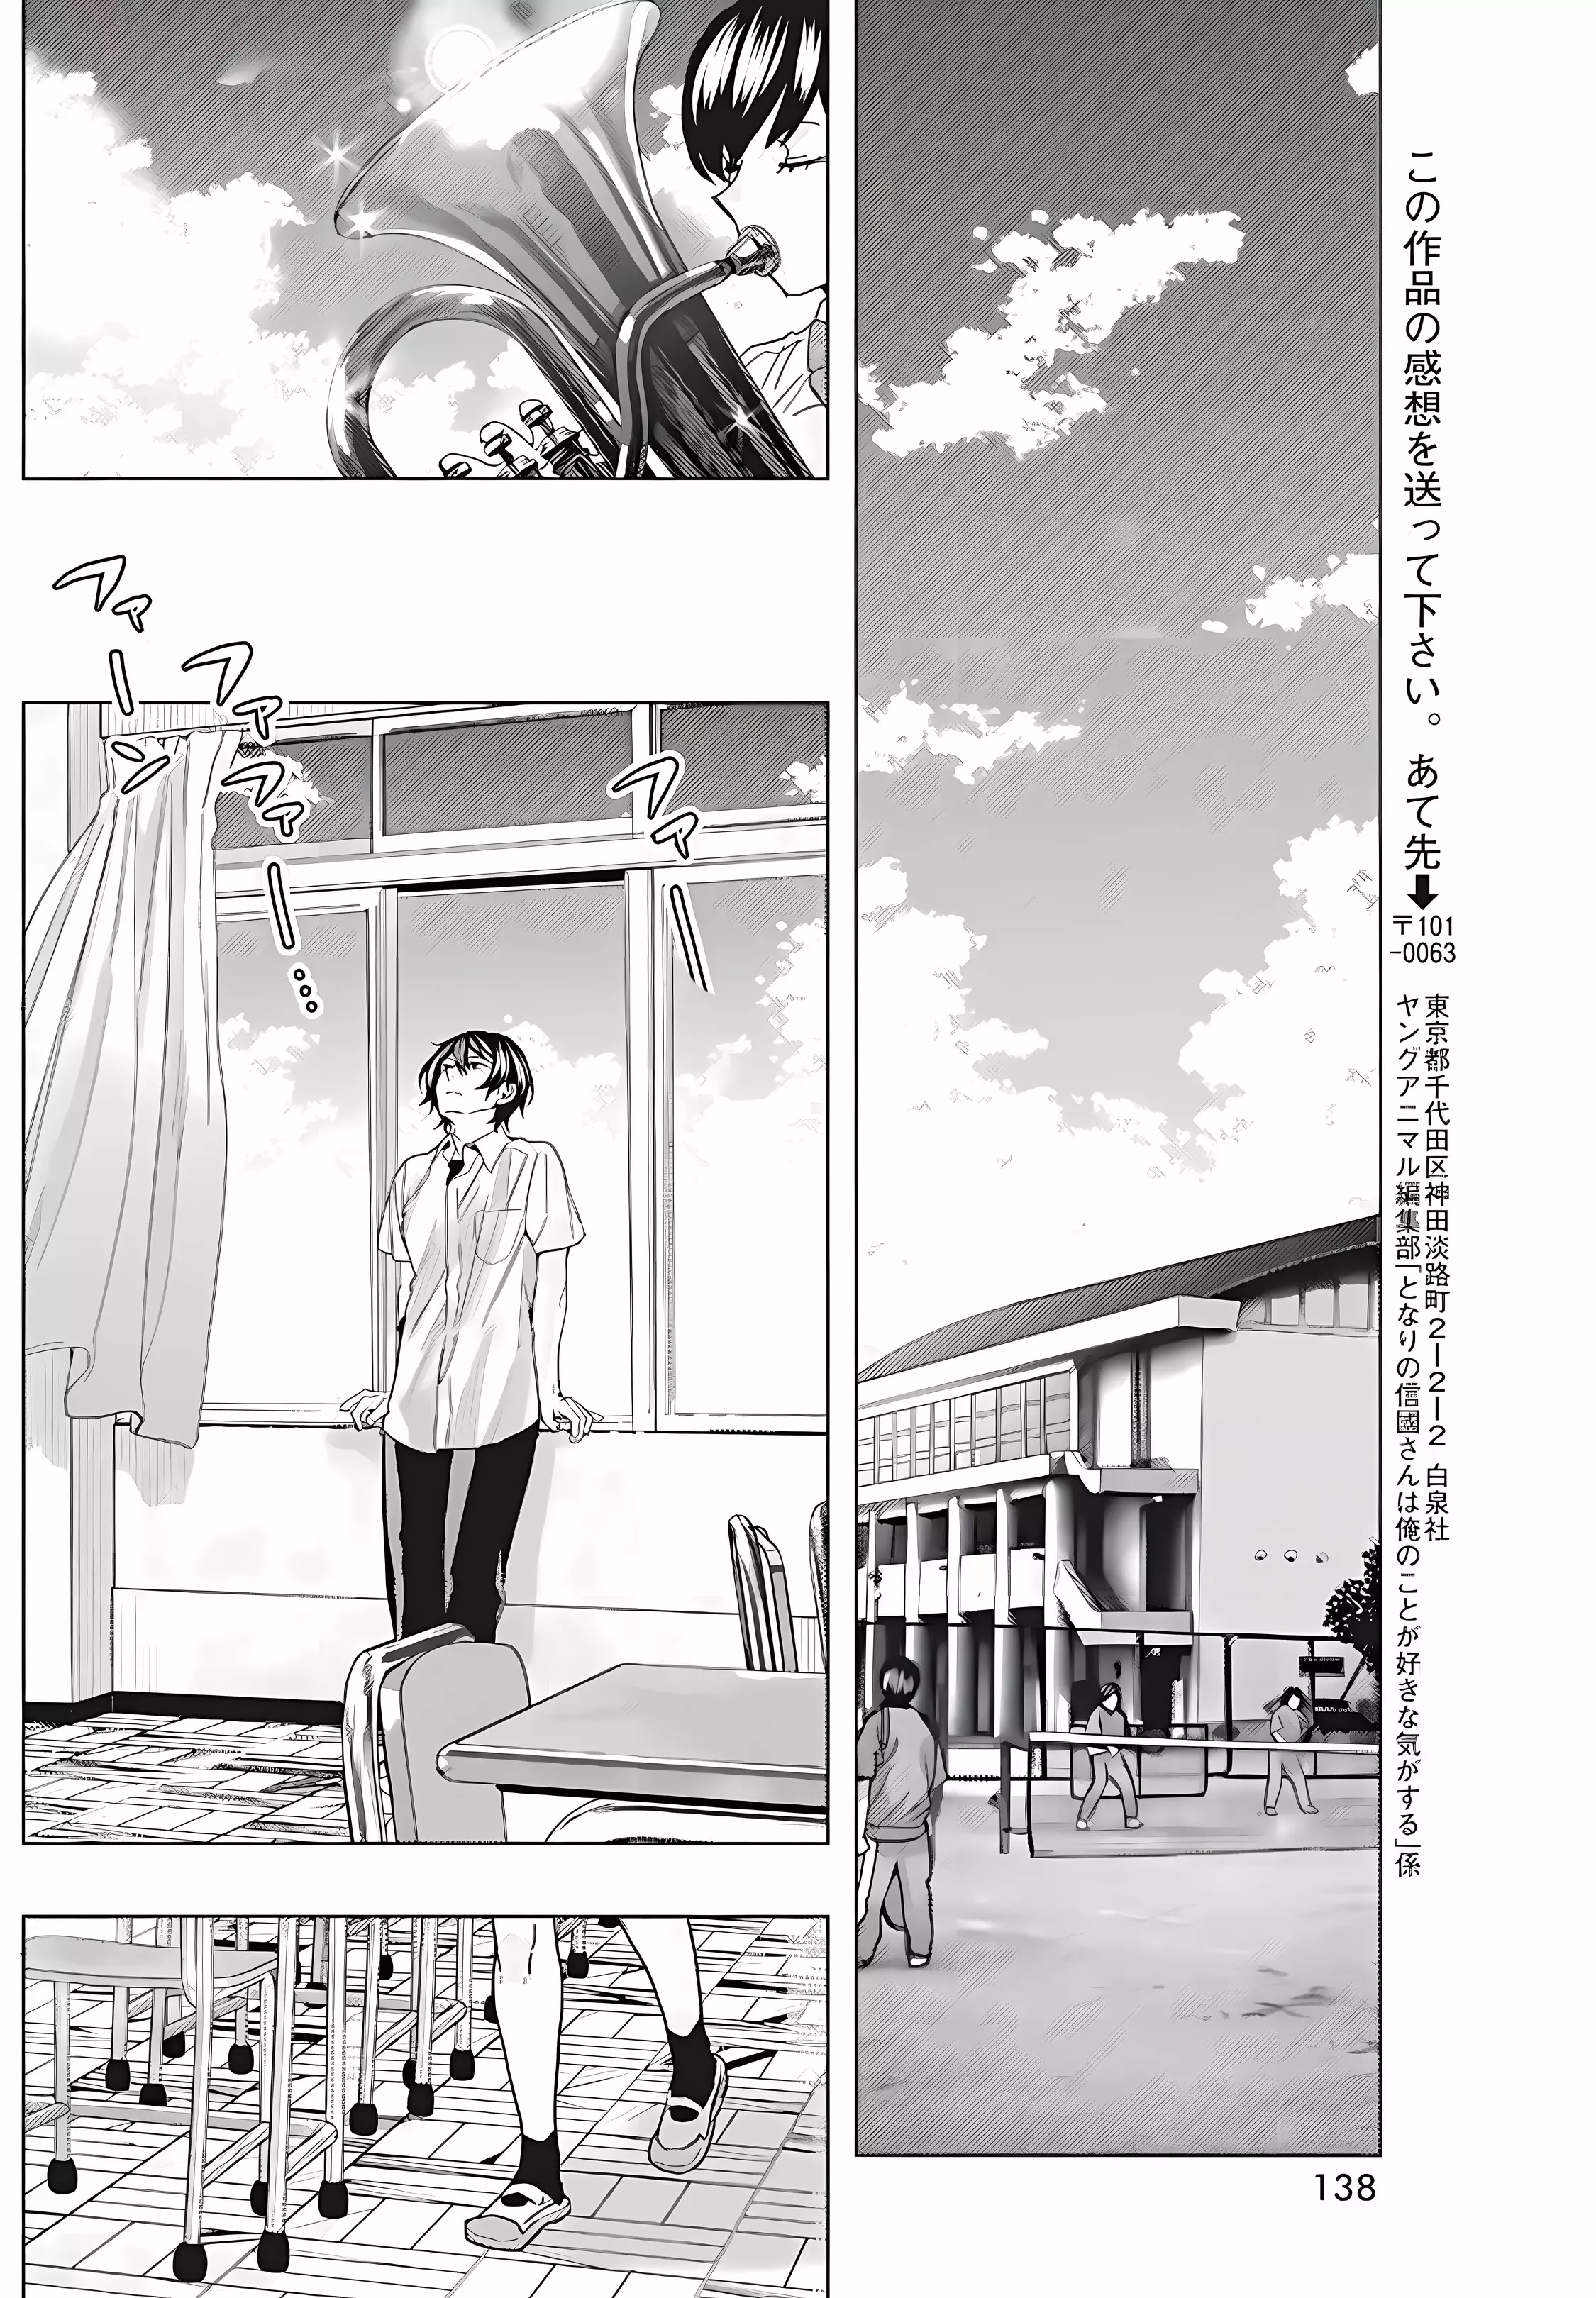 "nobukuni-San" Does She Like Me? - 29 page 13-d4943f79